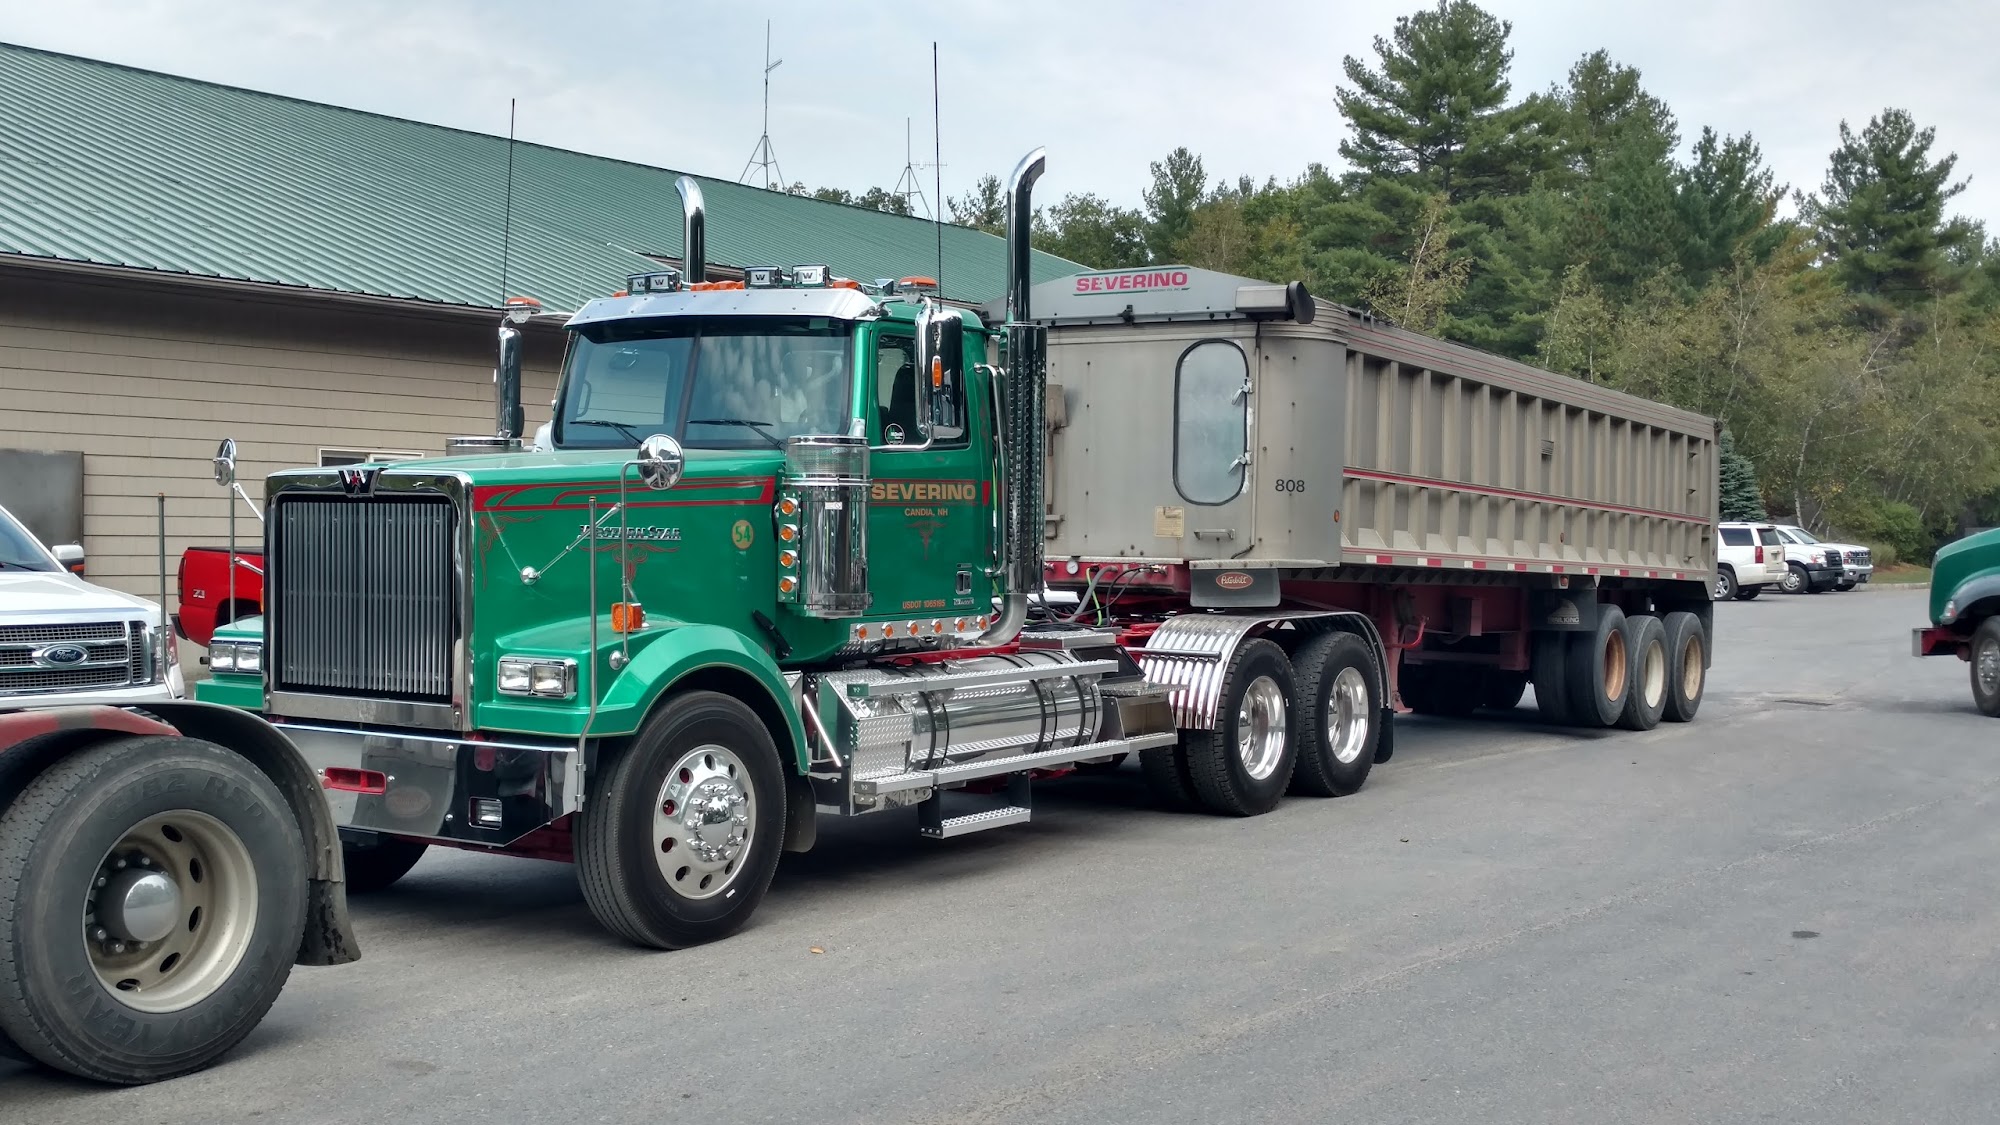 Severino Trucking 512 Raymond Rd, Candia New Hampshire 03034